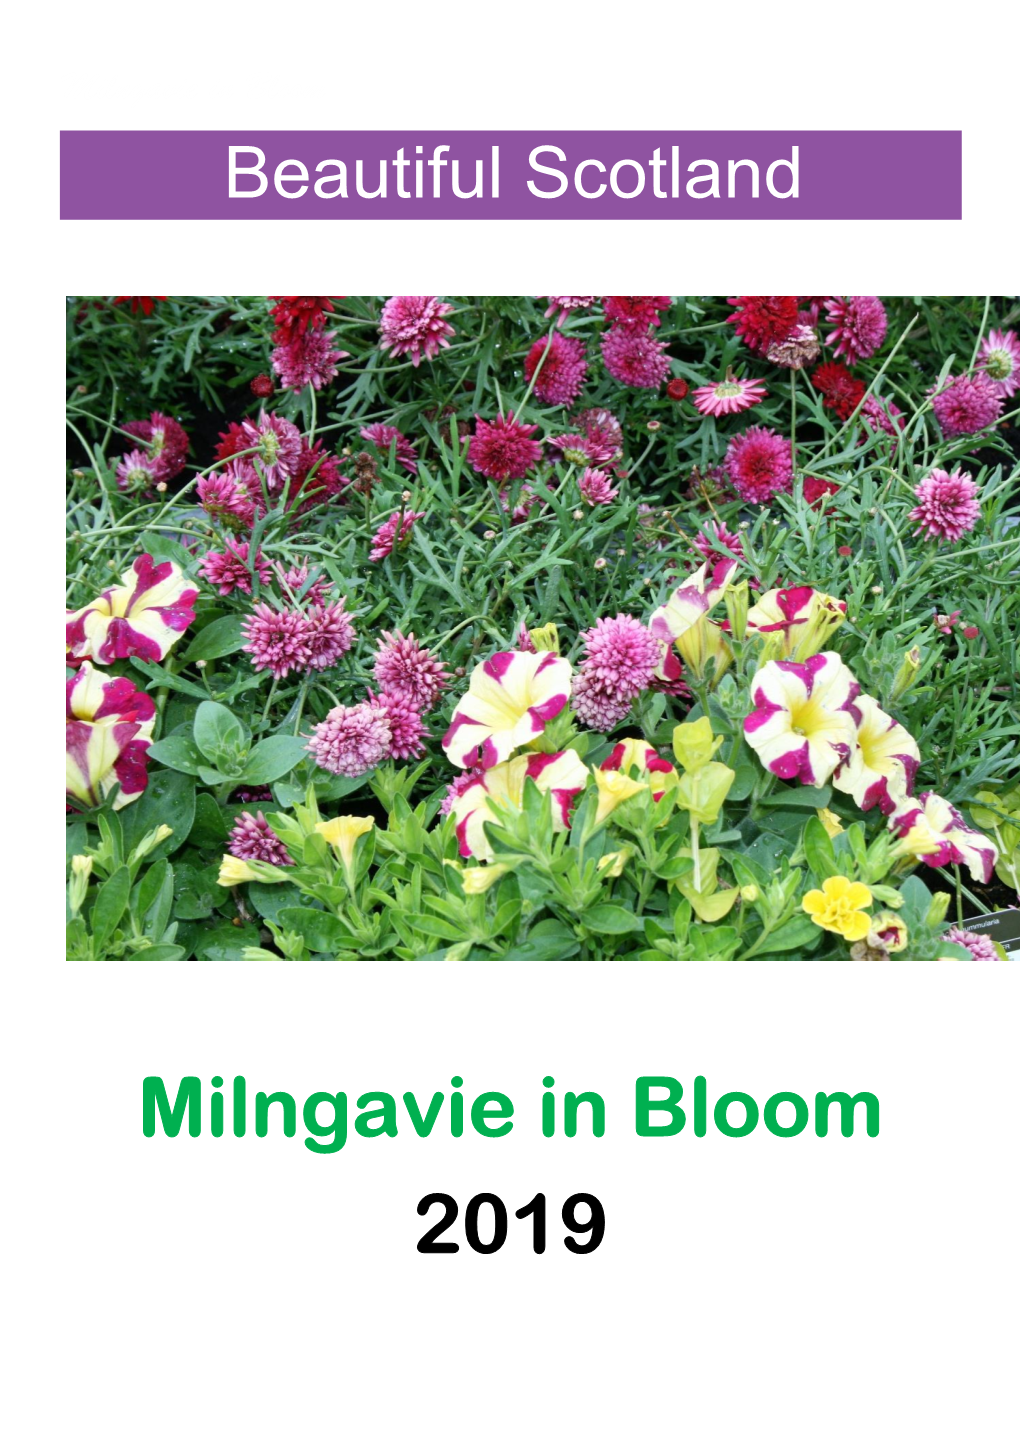 Milngavie in Bloom 2019